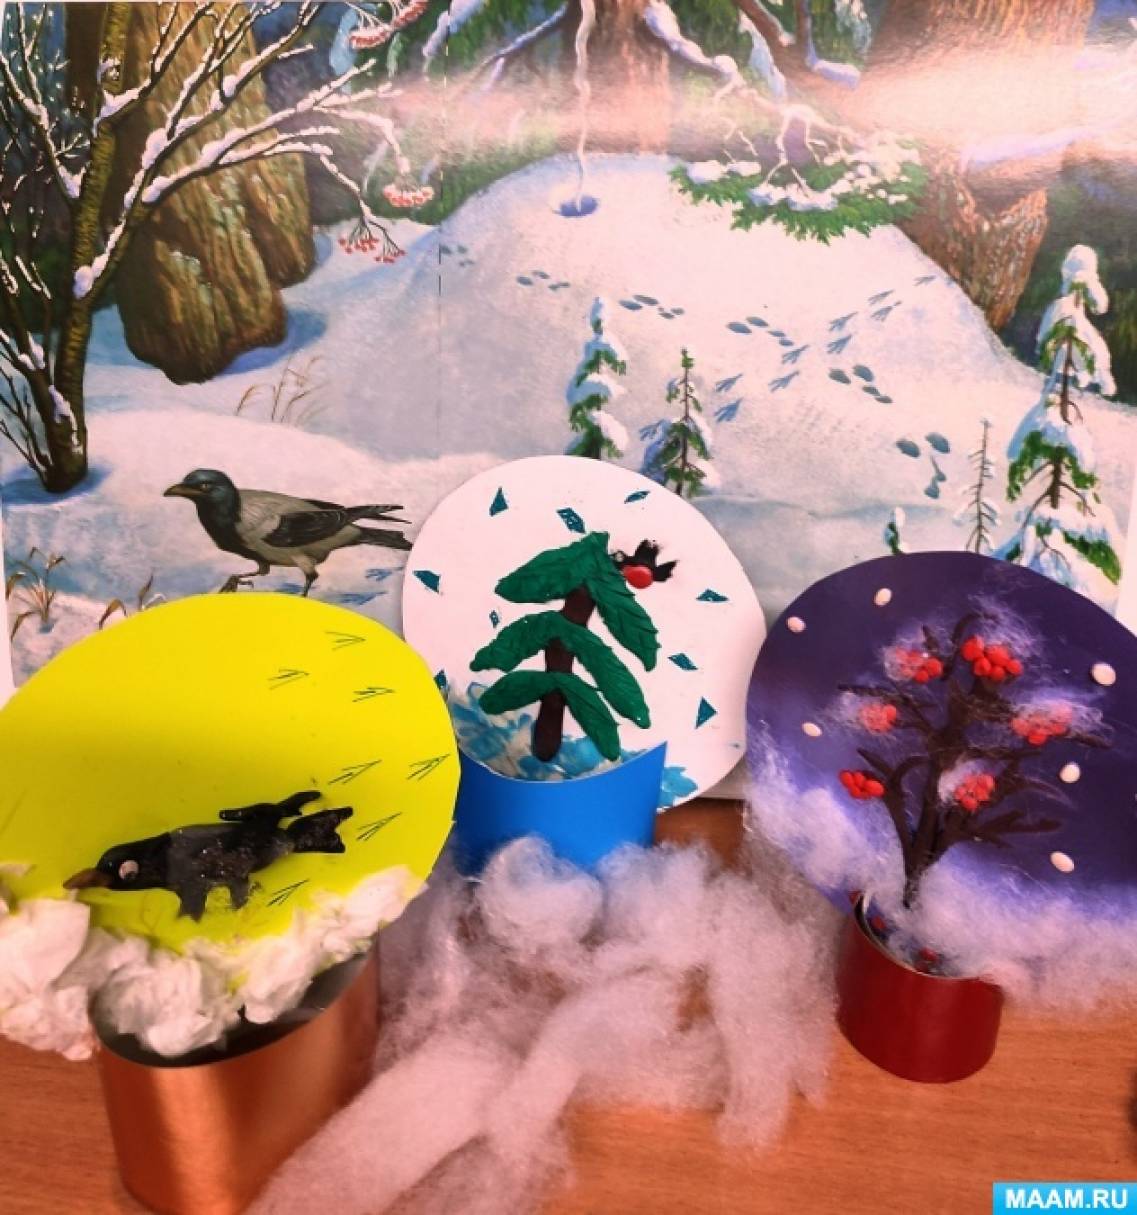 Детский мастер-класс по комбинированной работе «Зимний пейзаж» с использованием втулки